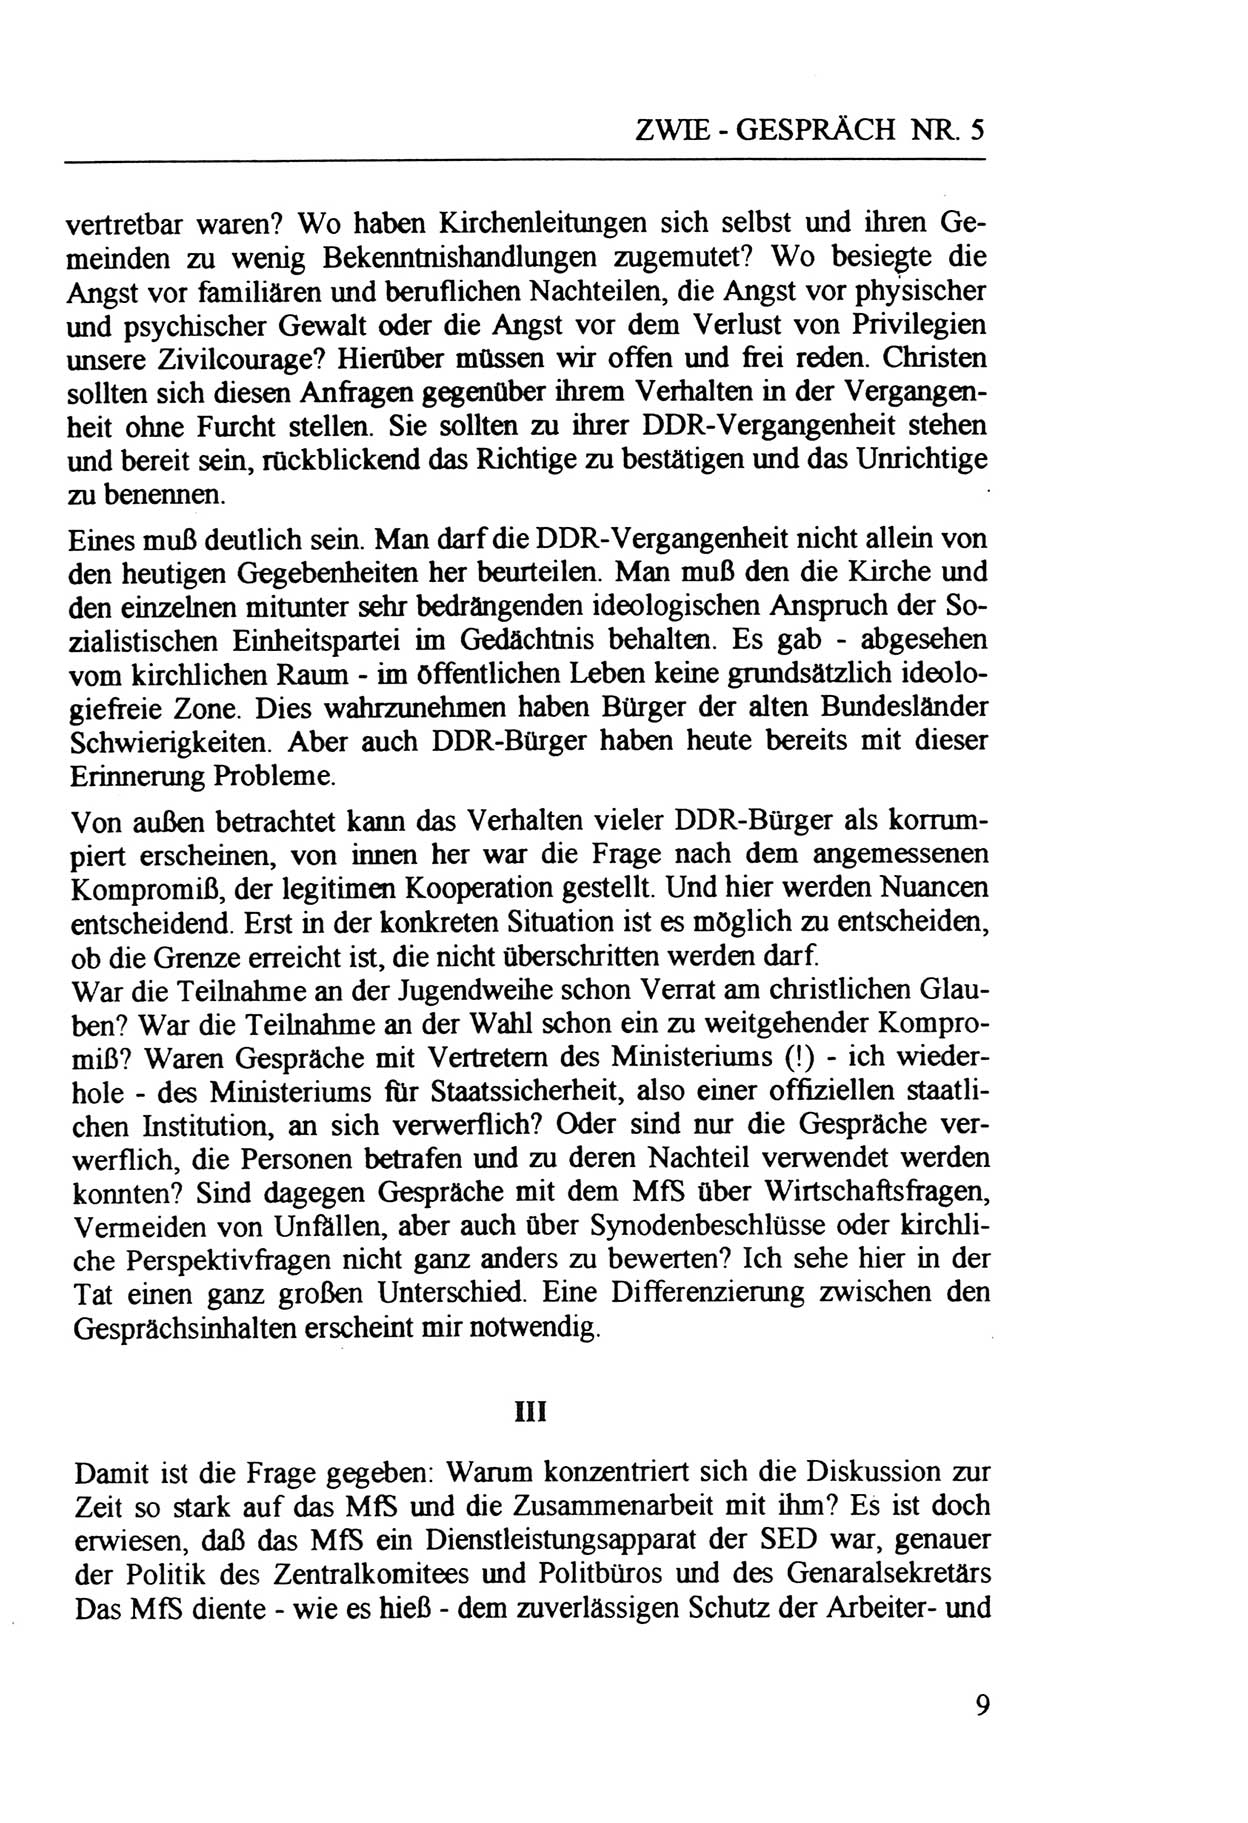 Zwie-Gespräch, Beiträge zur Aufarbeitung der Staatssicherheits-Vergangenheit [Deutsche Demokratische Republik (DDR)], Ausgabe Nr. 5, Berlin 1991, Seite 9 (Zwie-Gespr. Ausg. 5 1991, S. 9)